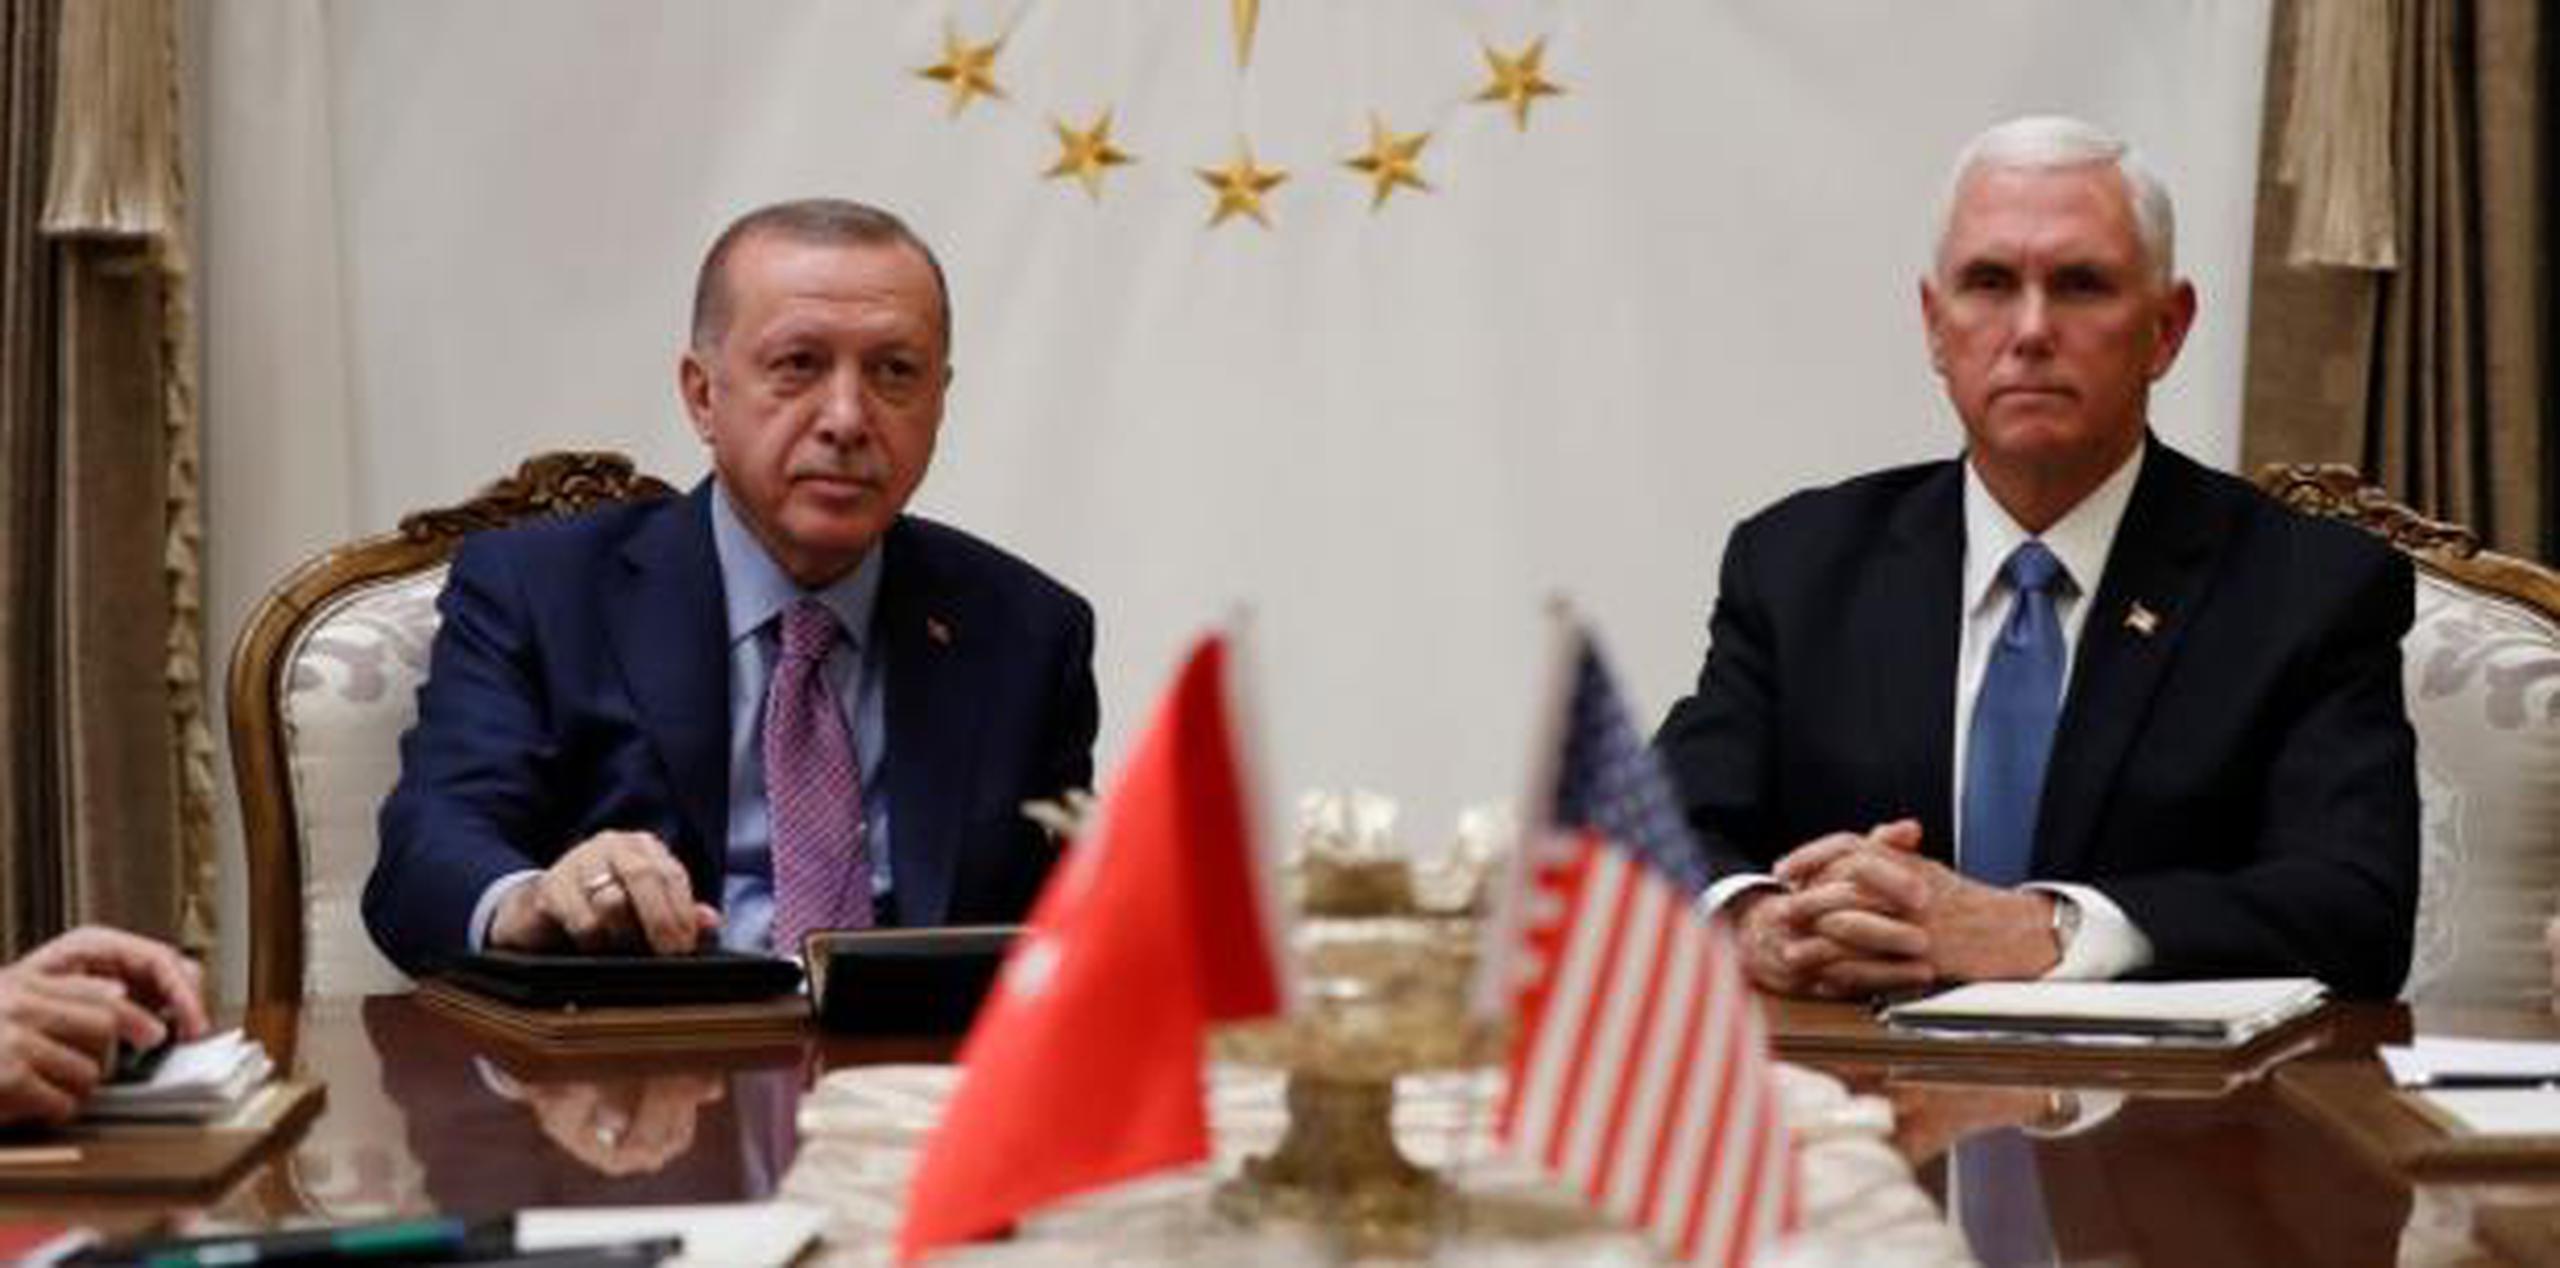 El vicepresidente de Estados Unidos, Mike Pence se reunió con el presidente de Turquía Ayyip Erdogan. (AP)